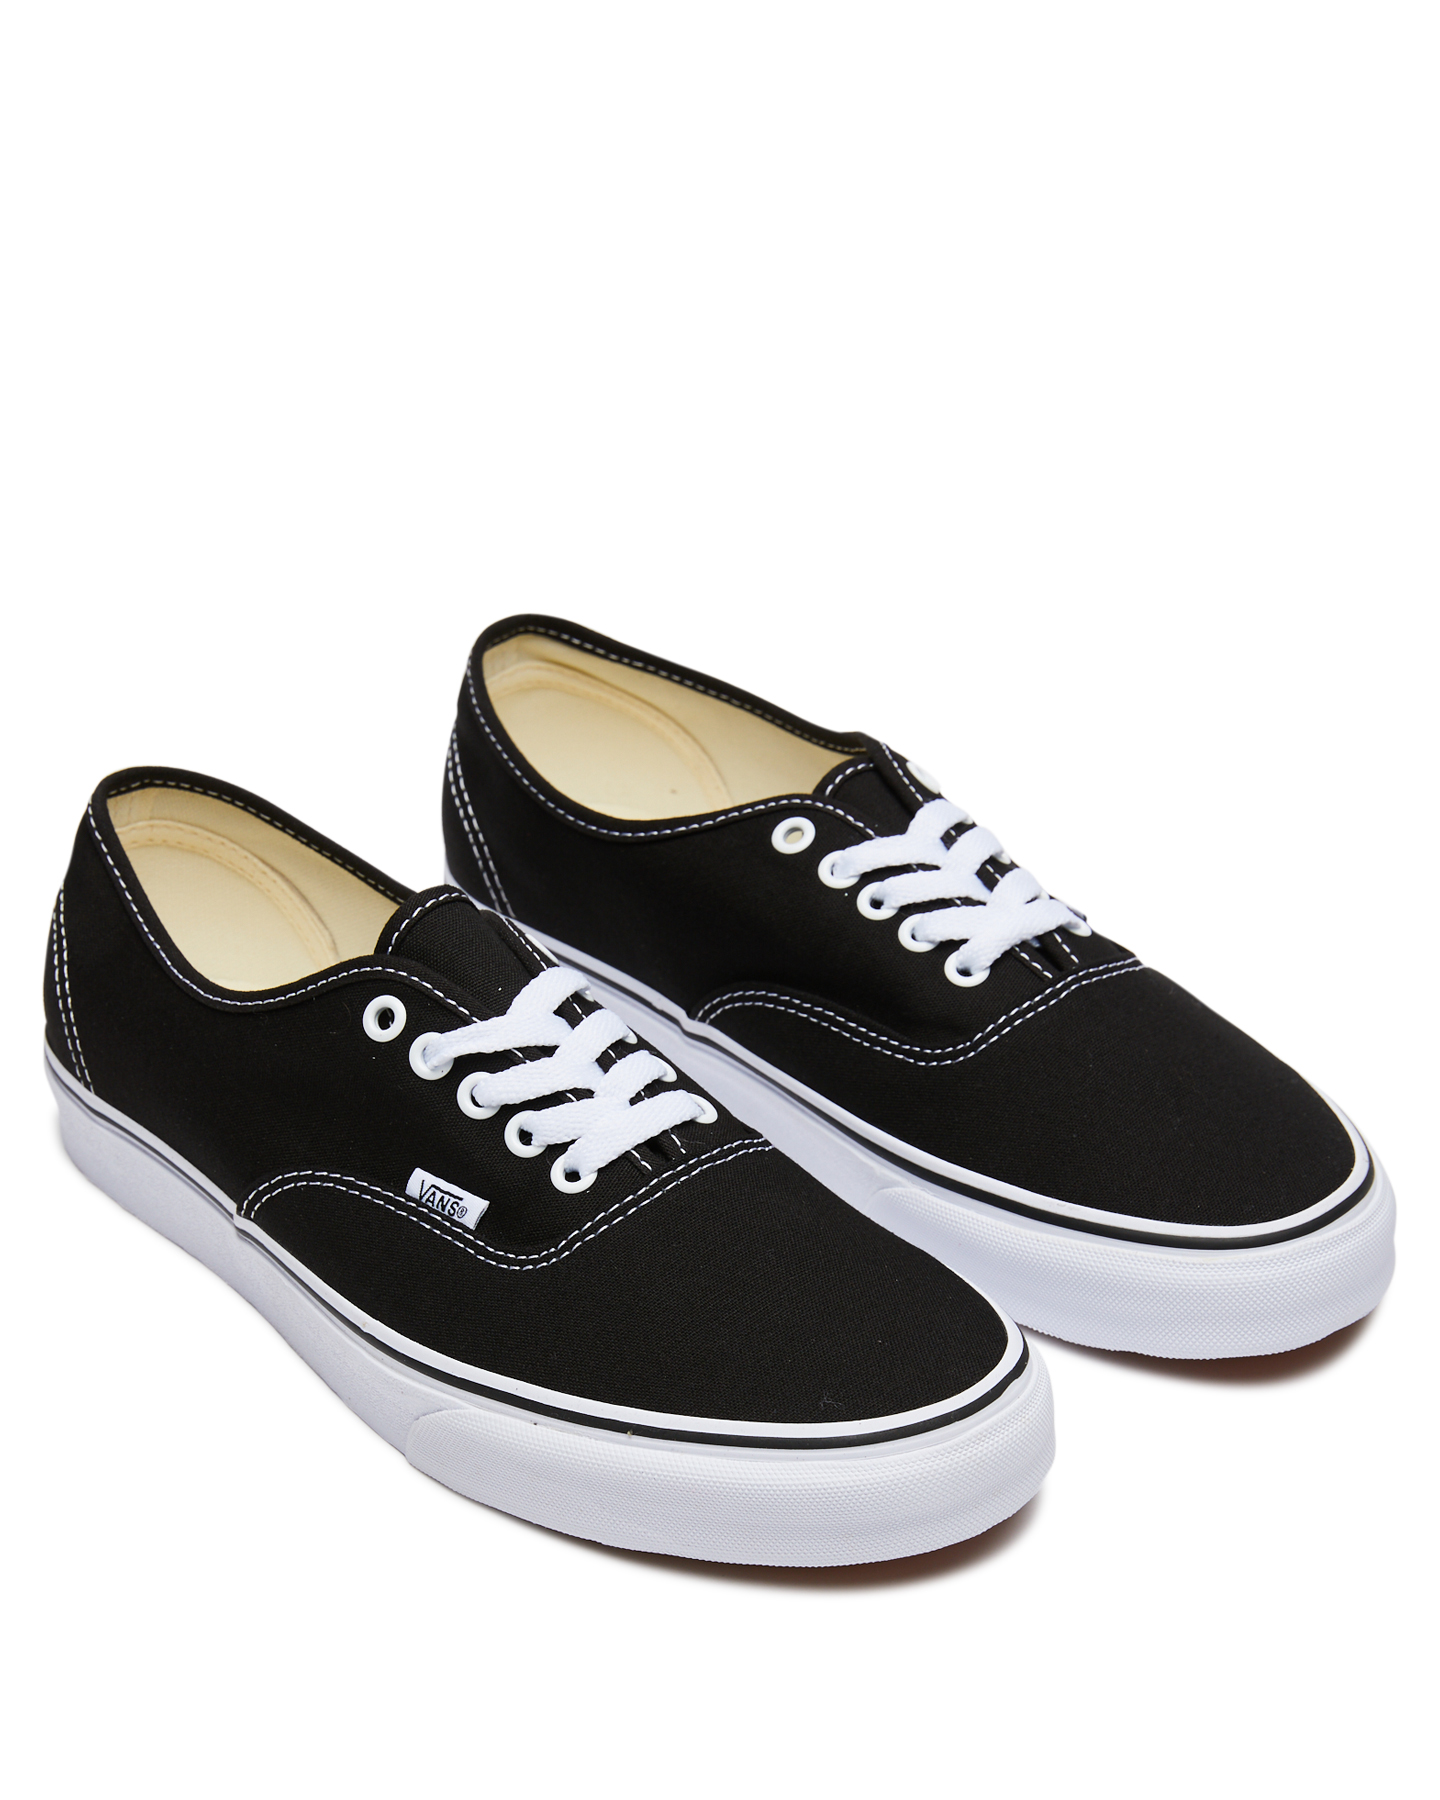 Vans Womens Authentic Shoe - Black 